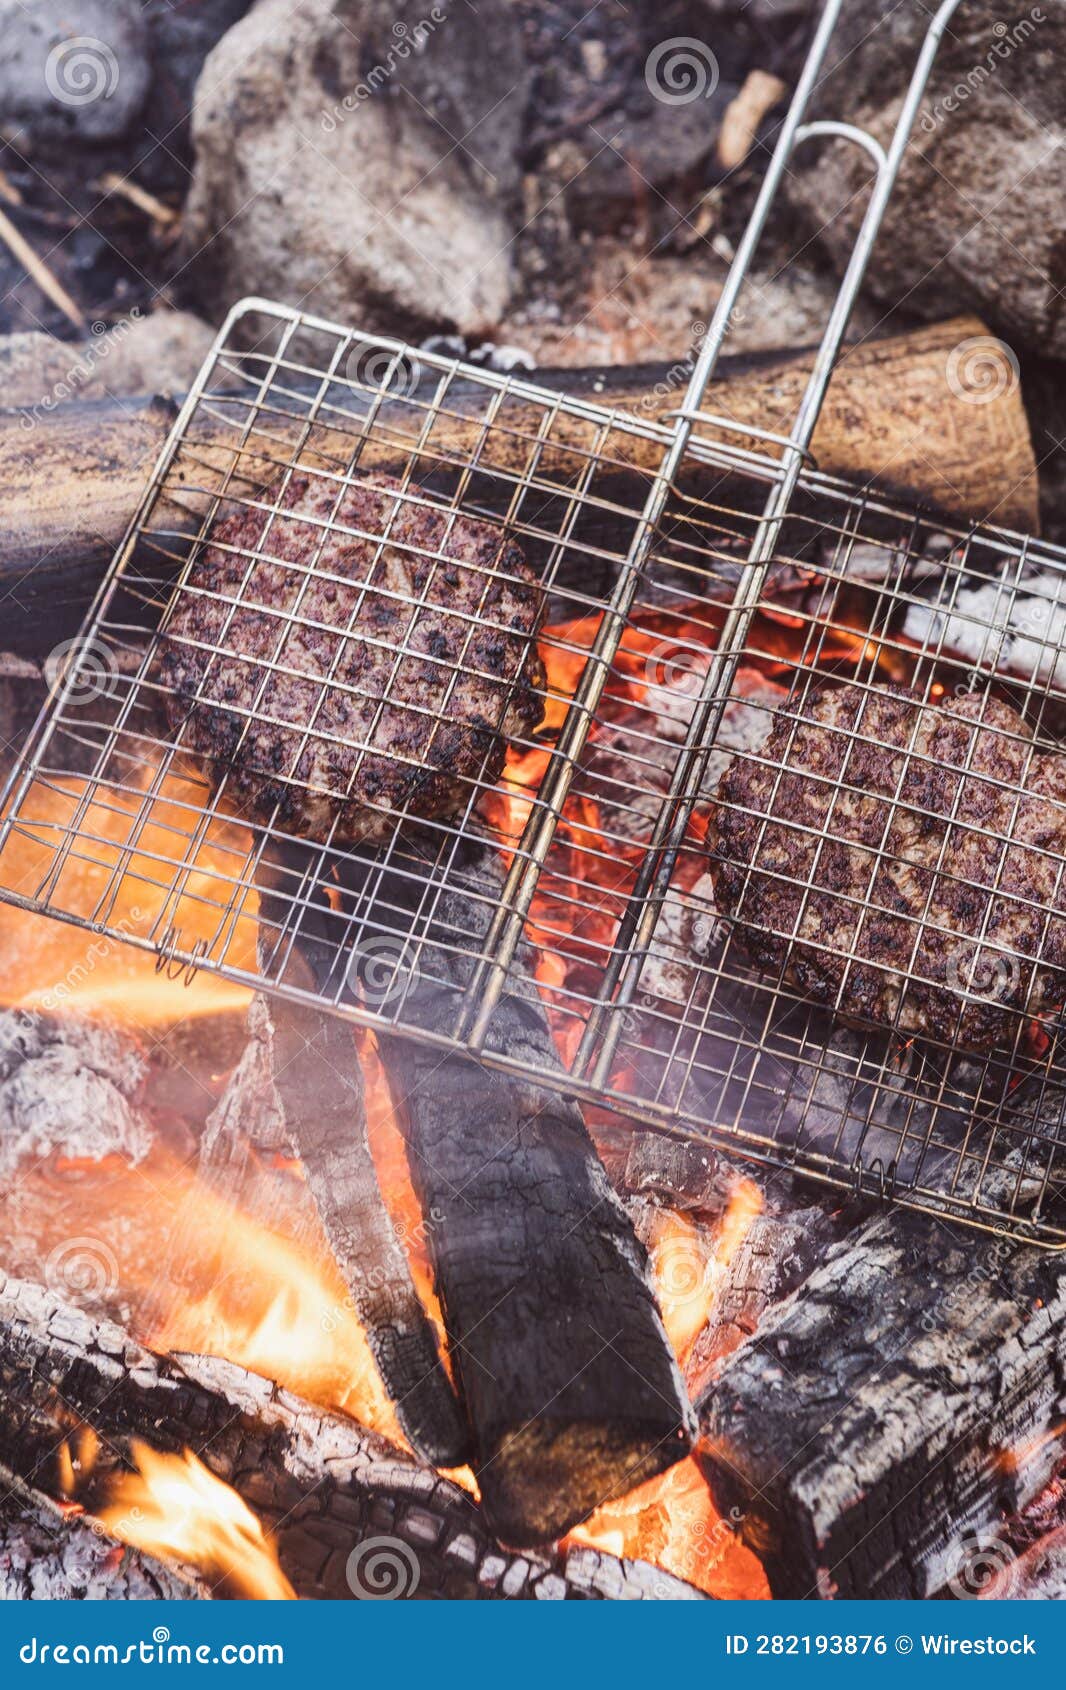 Viande Sur Grille Barbecue Sur Une Cheminée Photo stock - Image du